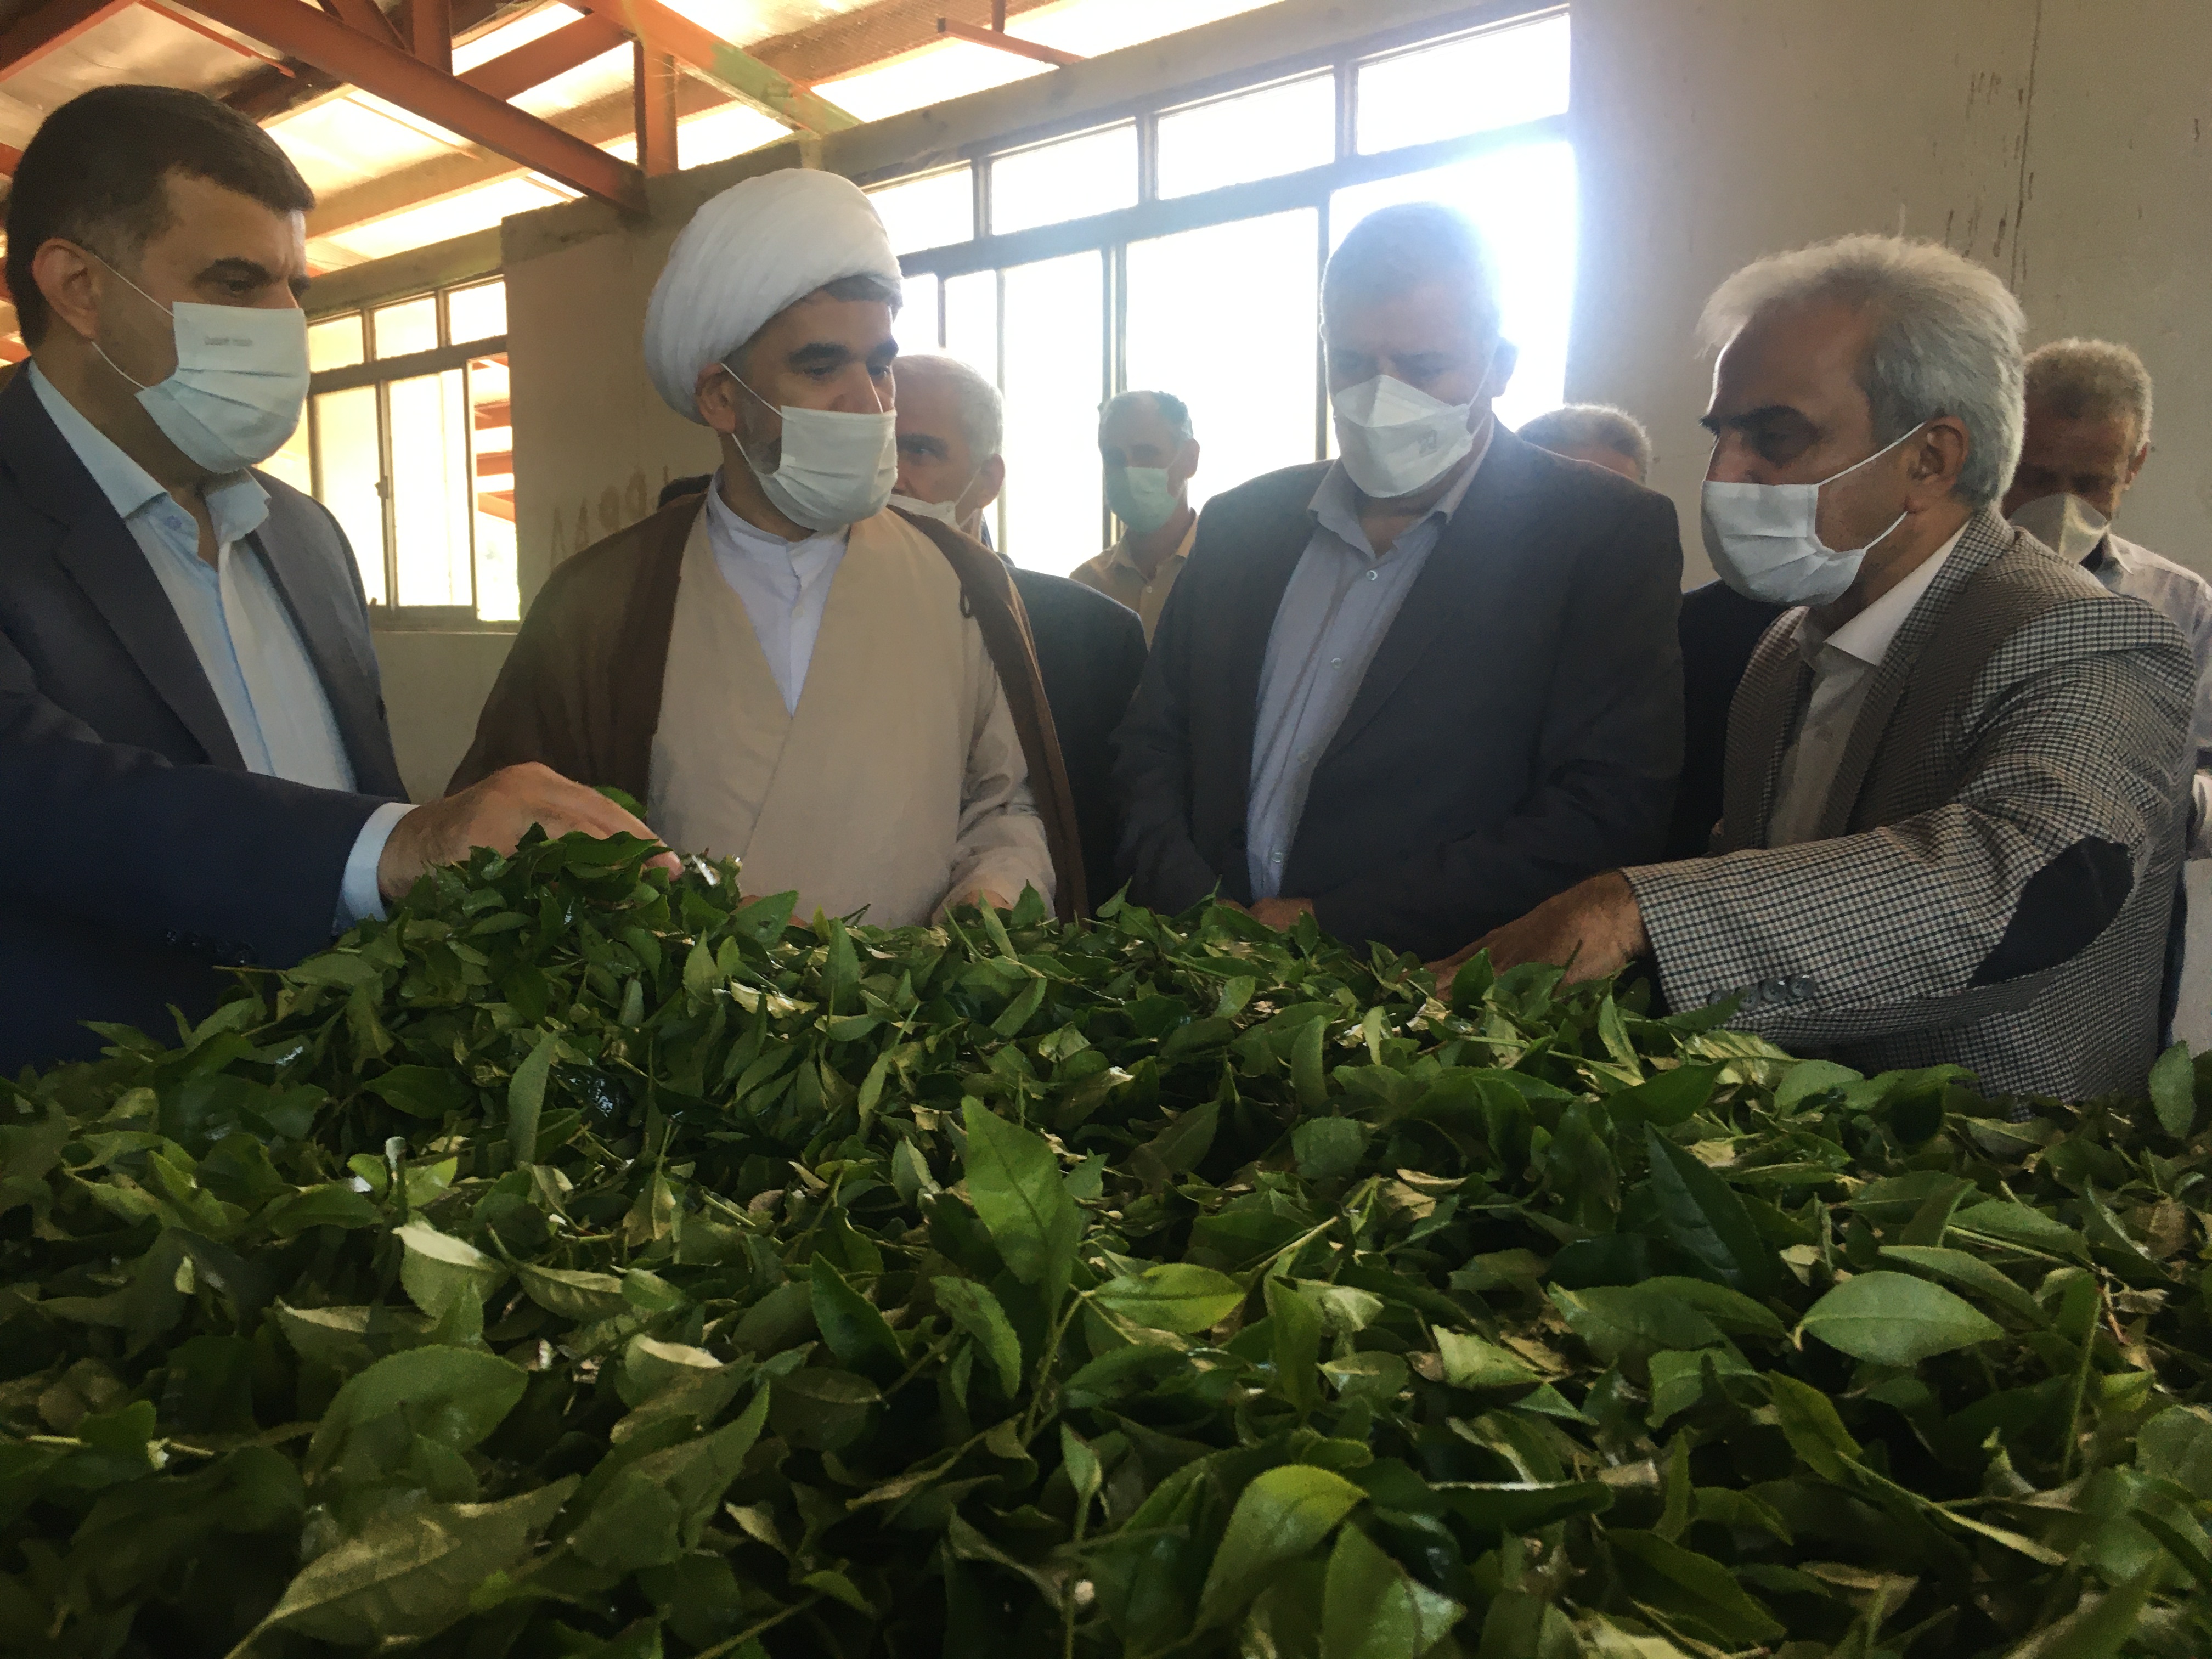 بازدید رئیس سازمان چای کشوربهمراه نماینده محترم مردم شهرستانهای لاهیجان و سیاهکل و هیات همراه از کارخانجات چایسازی سیاهکل